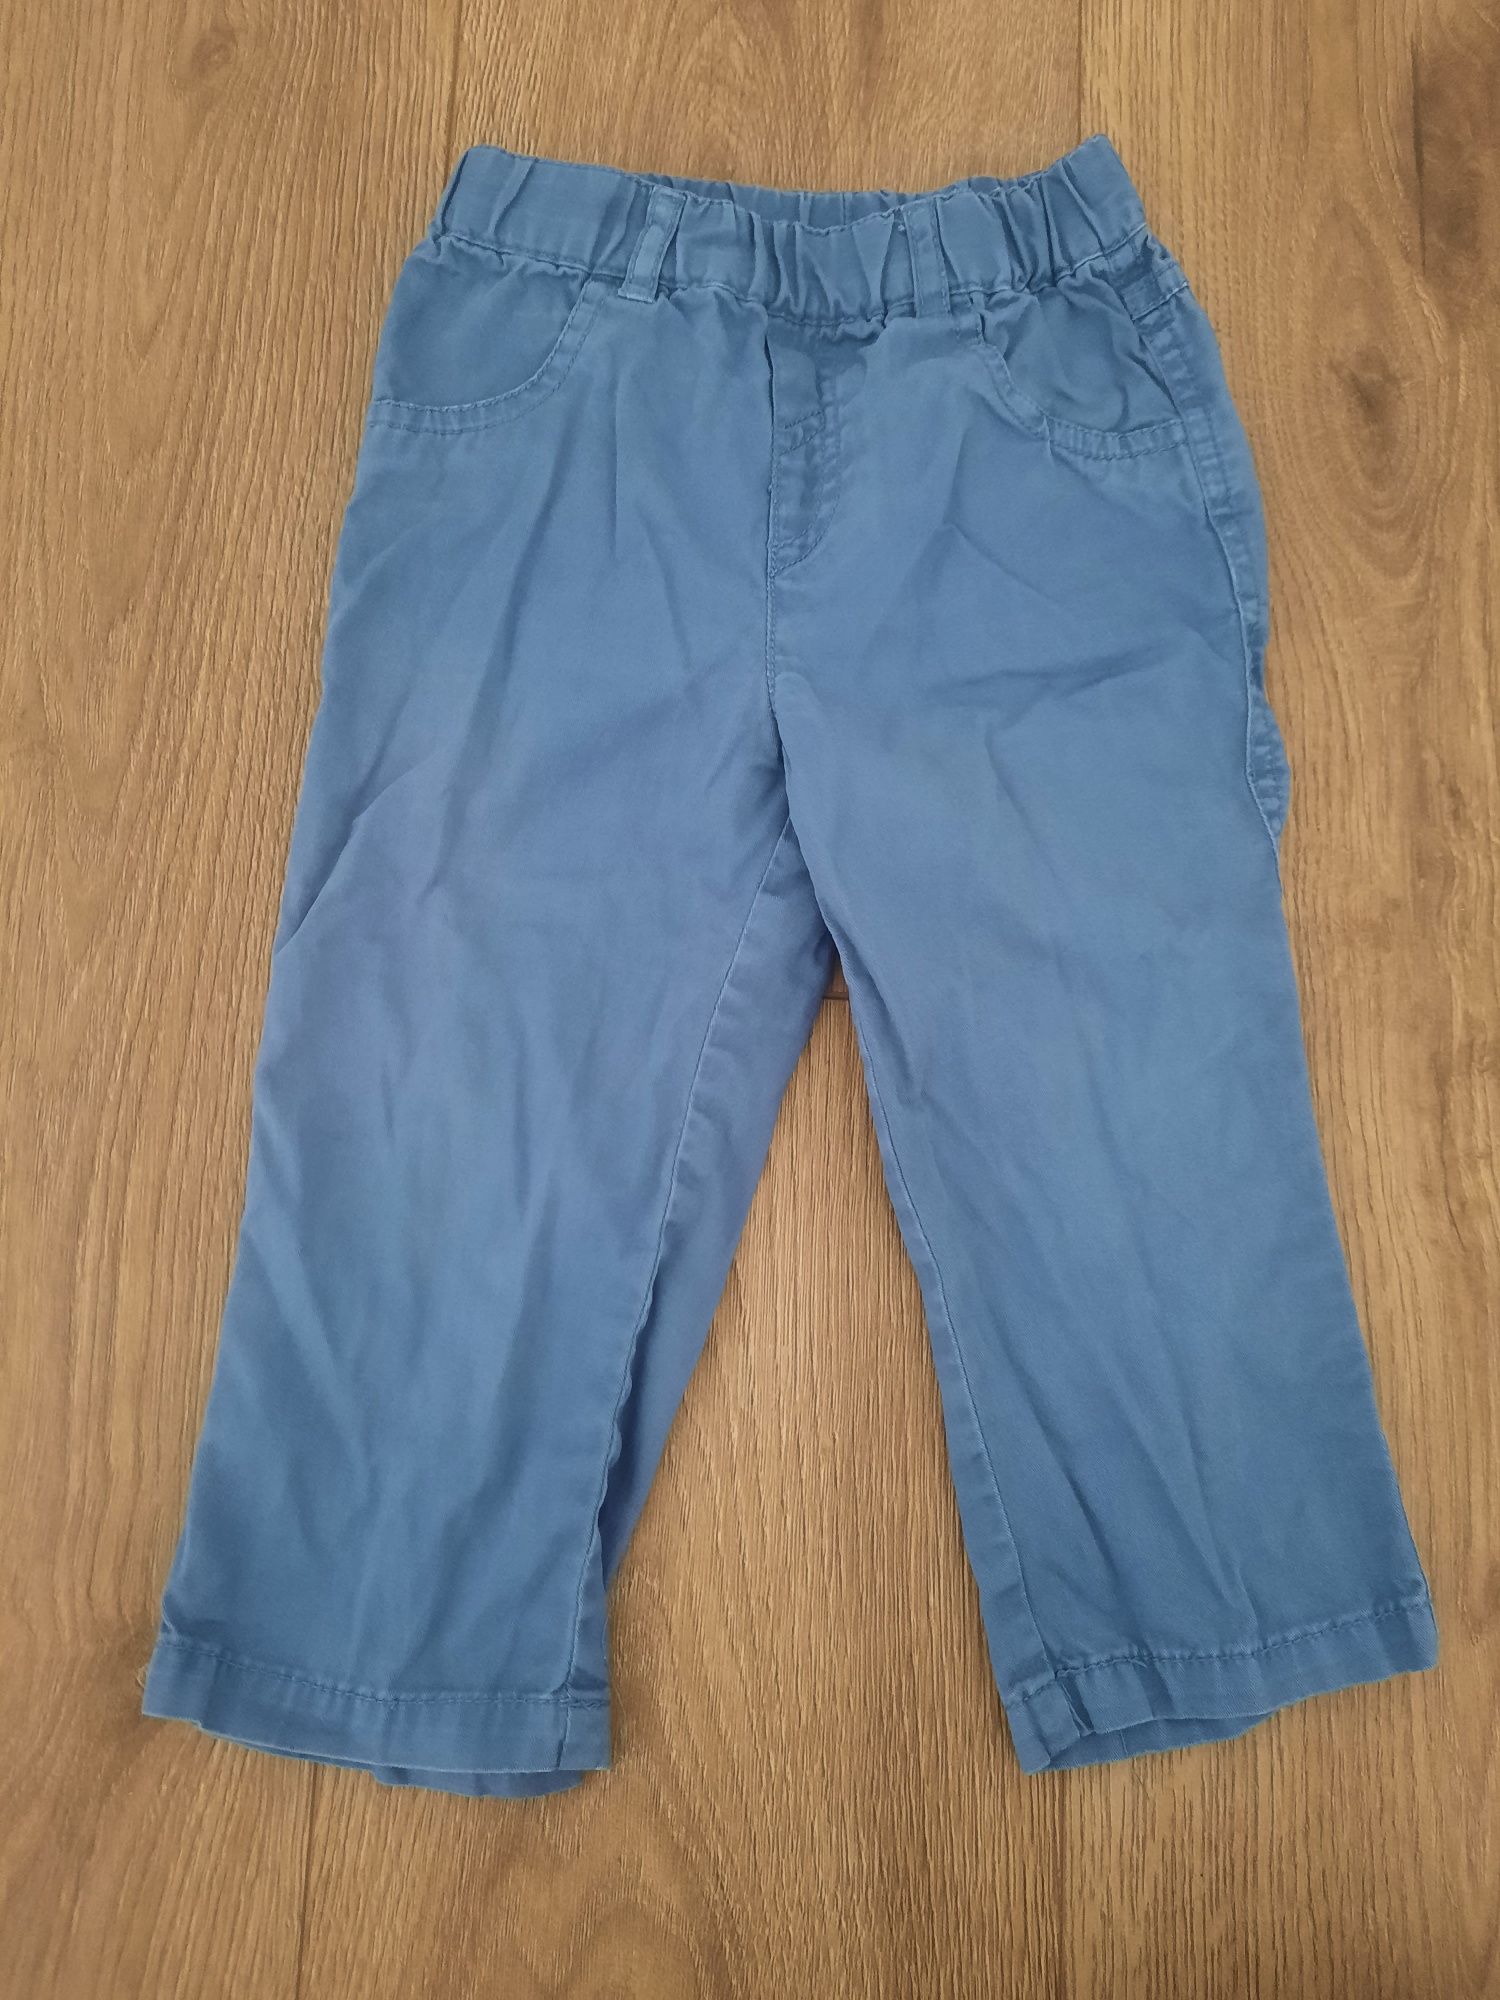 Spodnie dla chłopca niebieskie 82